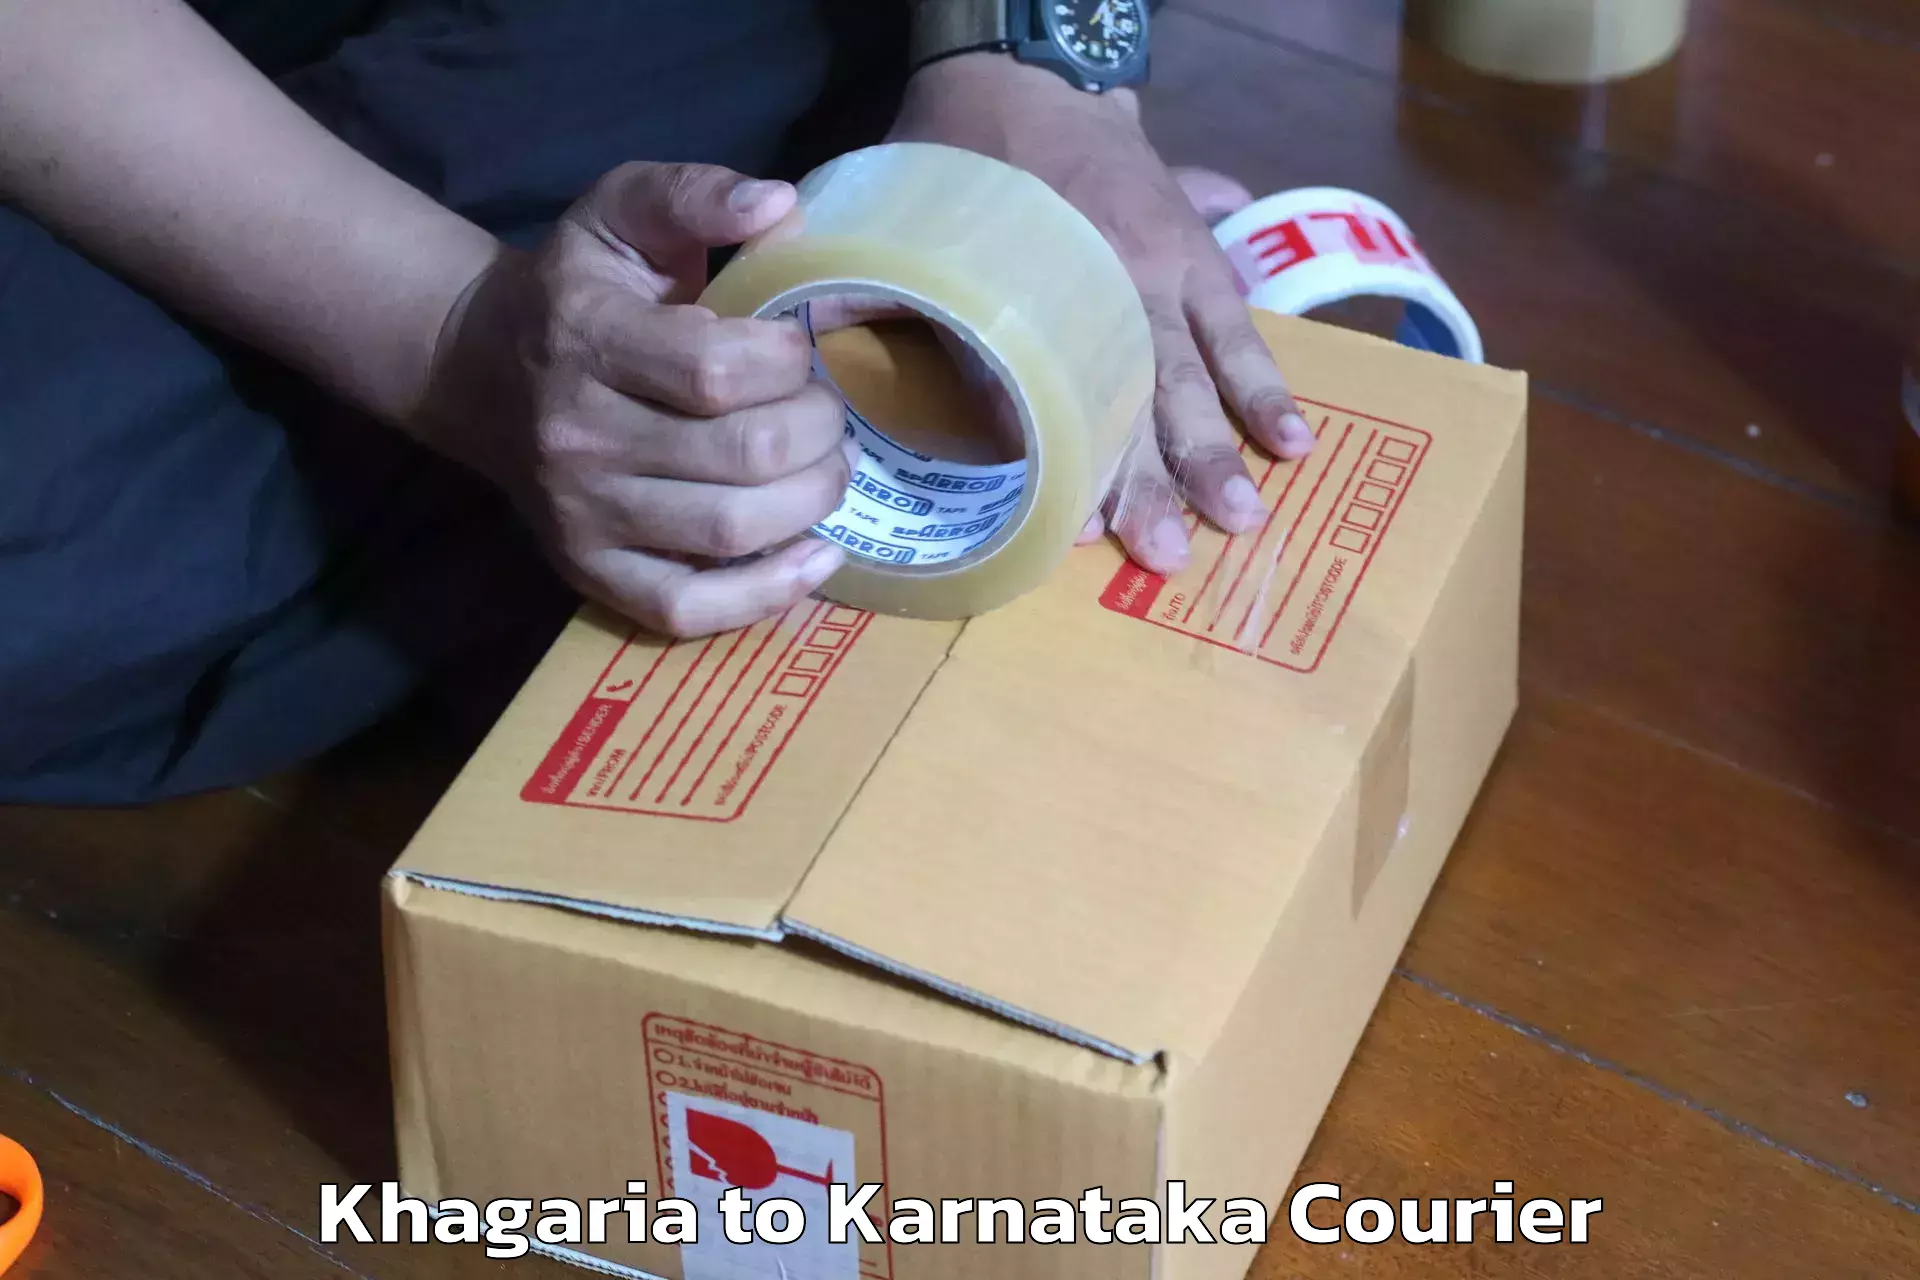 Furniture transport company Khagaria to Mannaekhelli